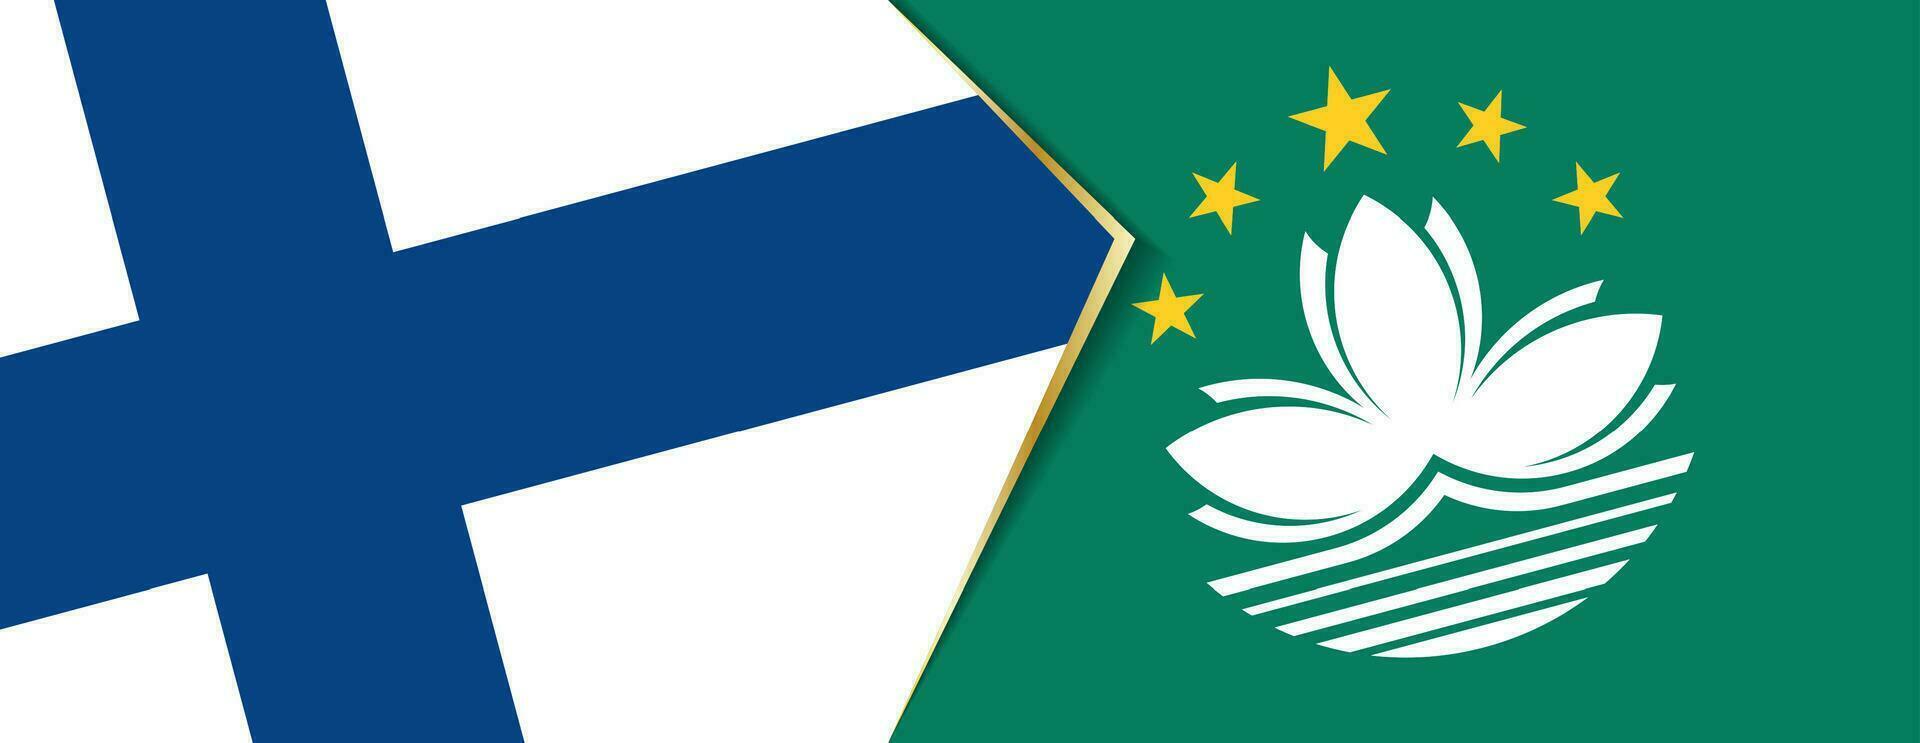 Finlandia y Macao banderas, dos vector banderas